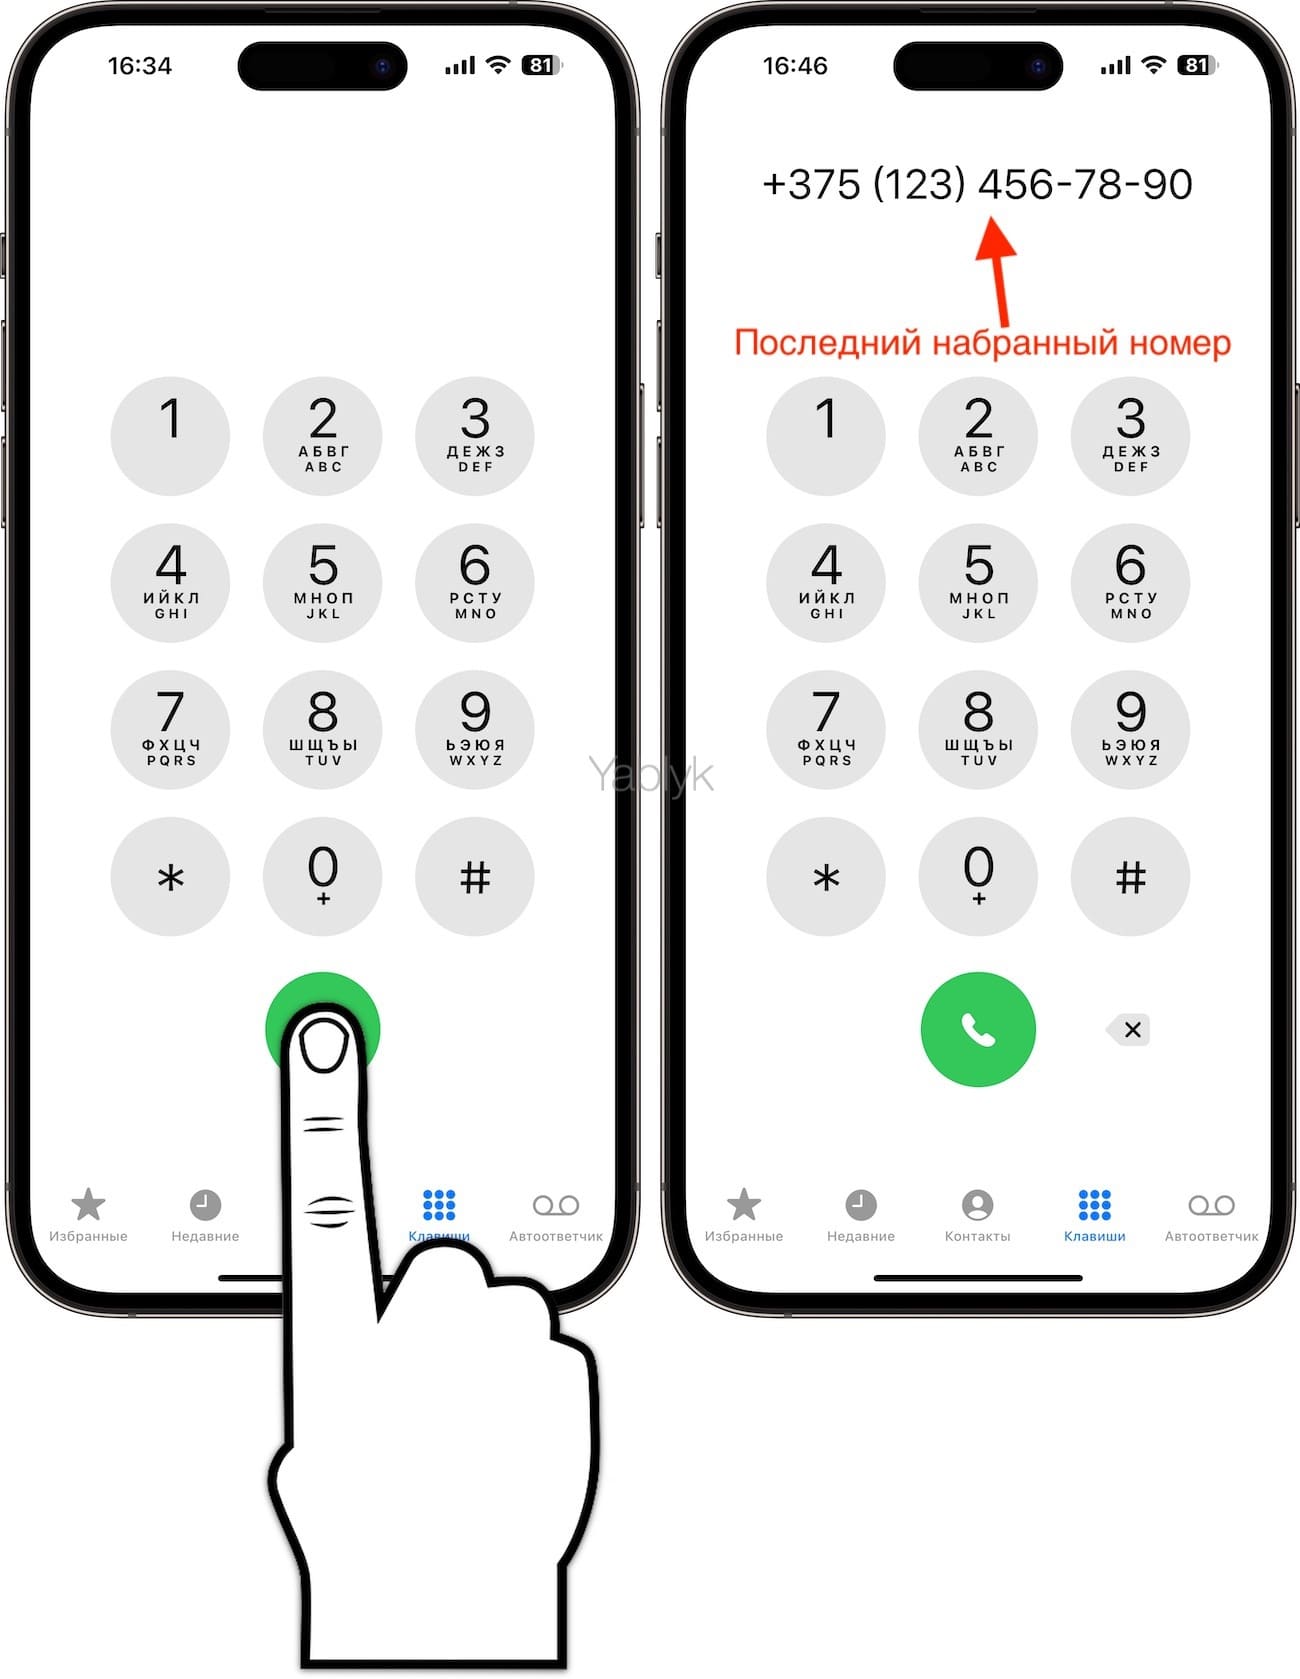 Как быстро перезвонить на последний набранный номер с iPhone